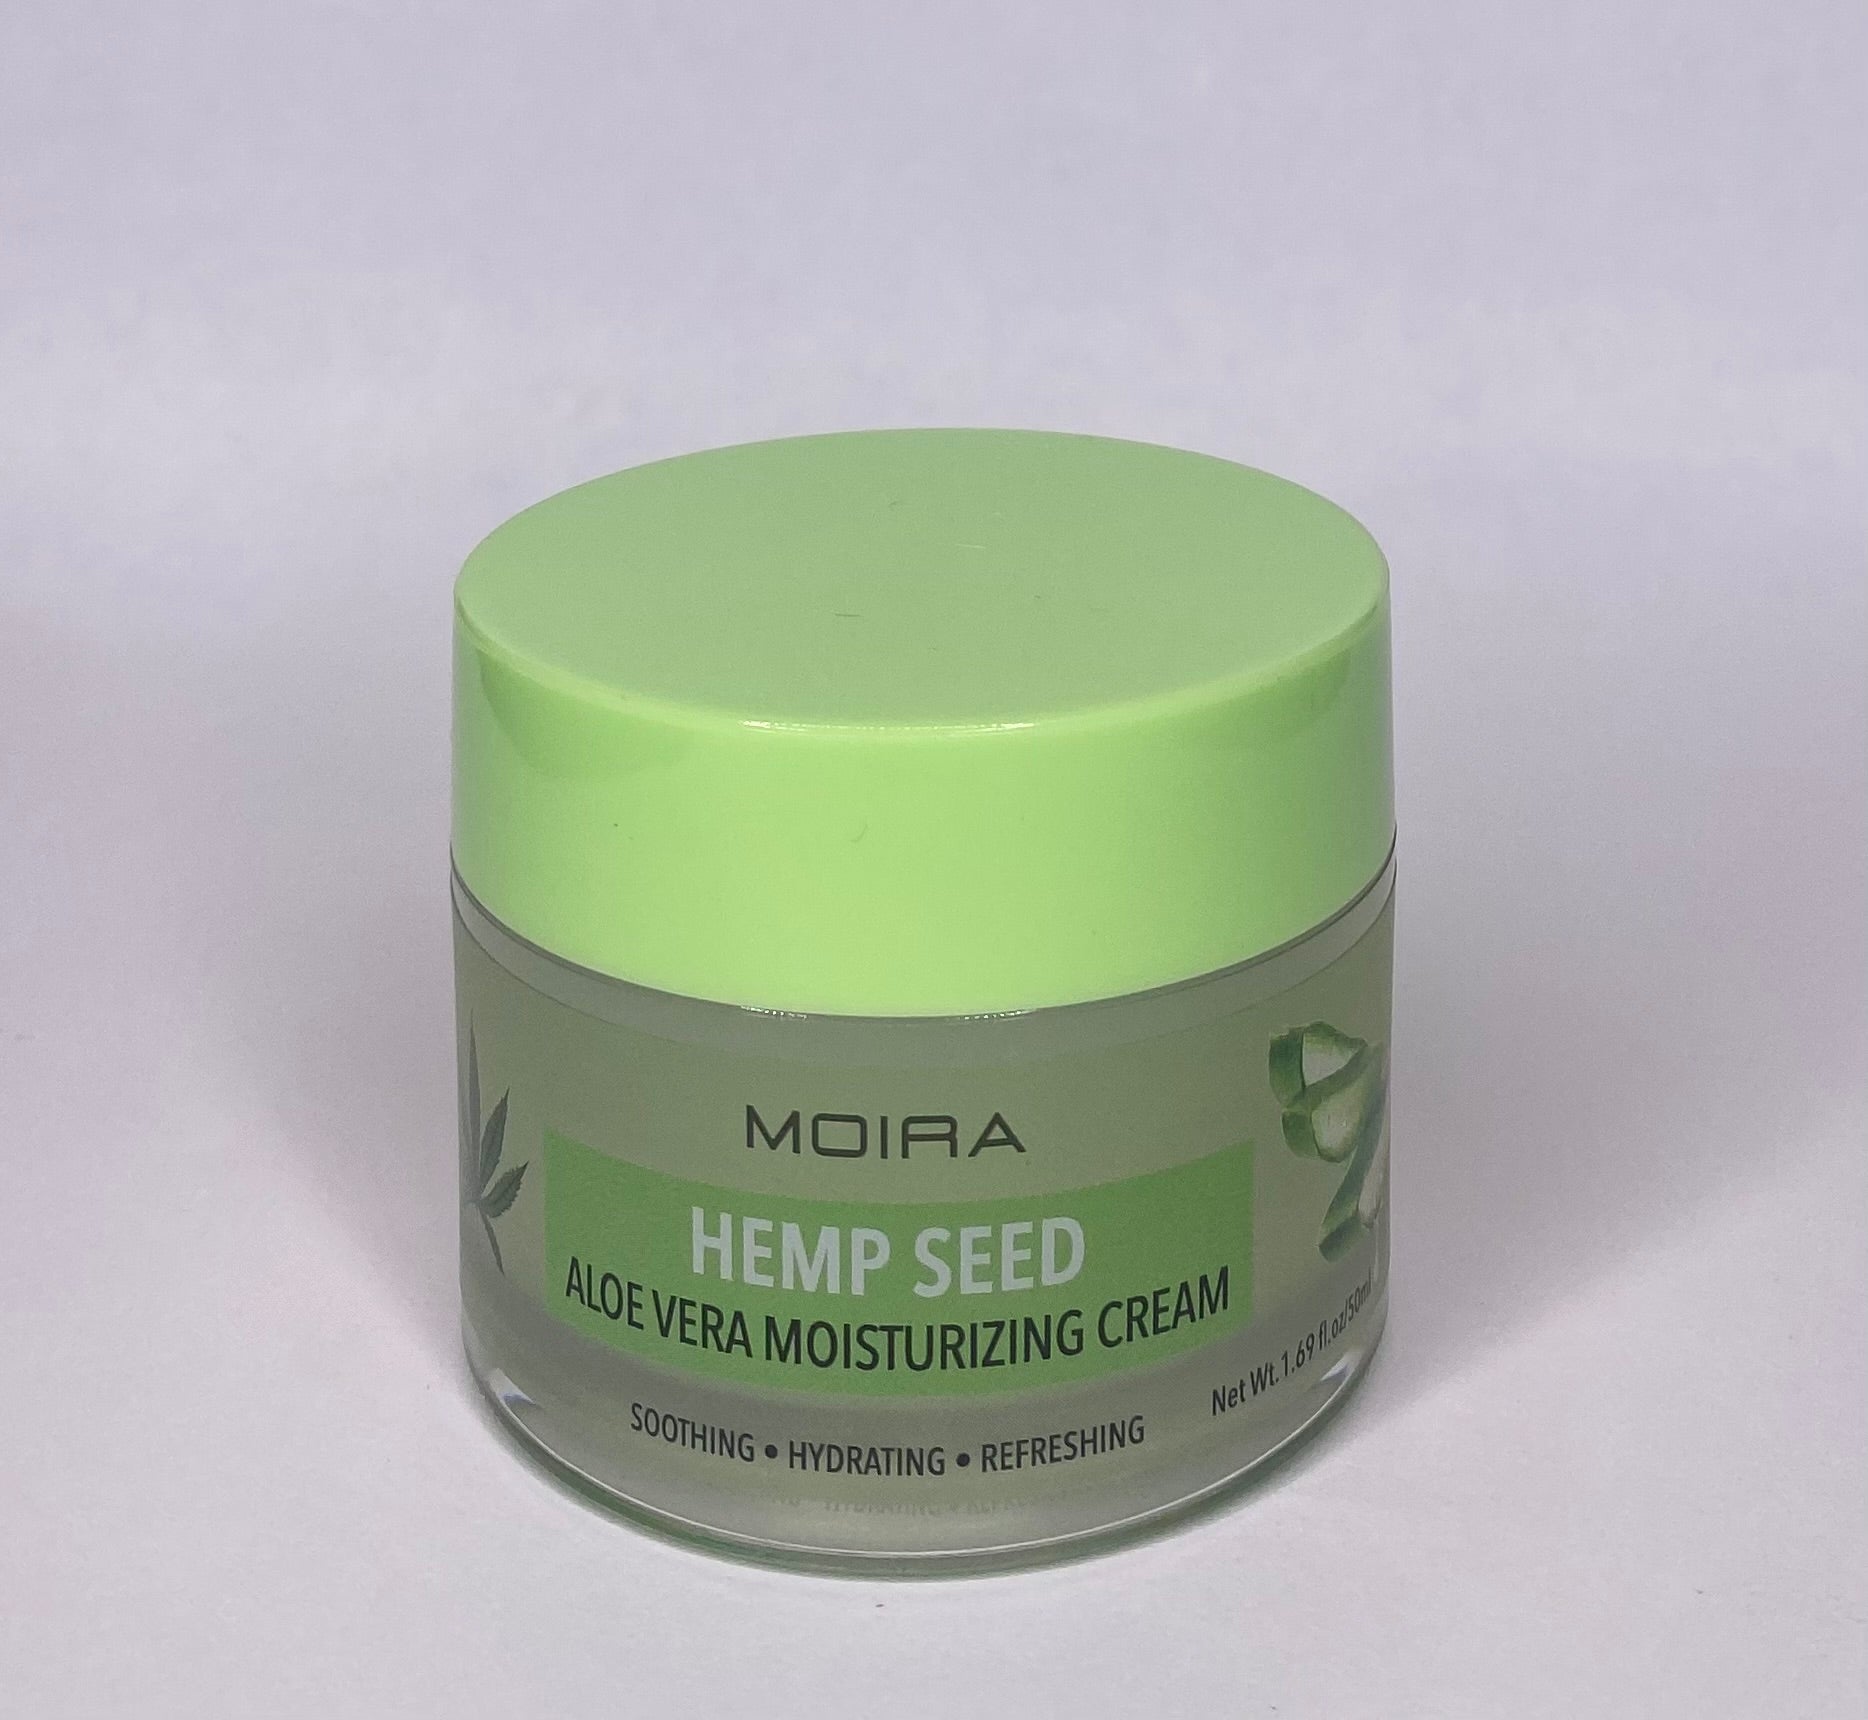 Moira Hemp Seed Aloe Vera Moisturizing Cream